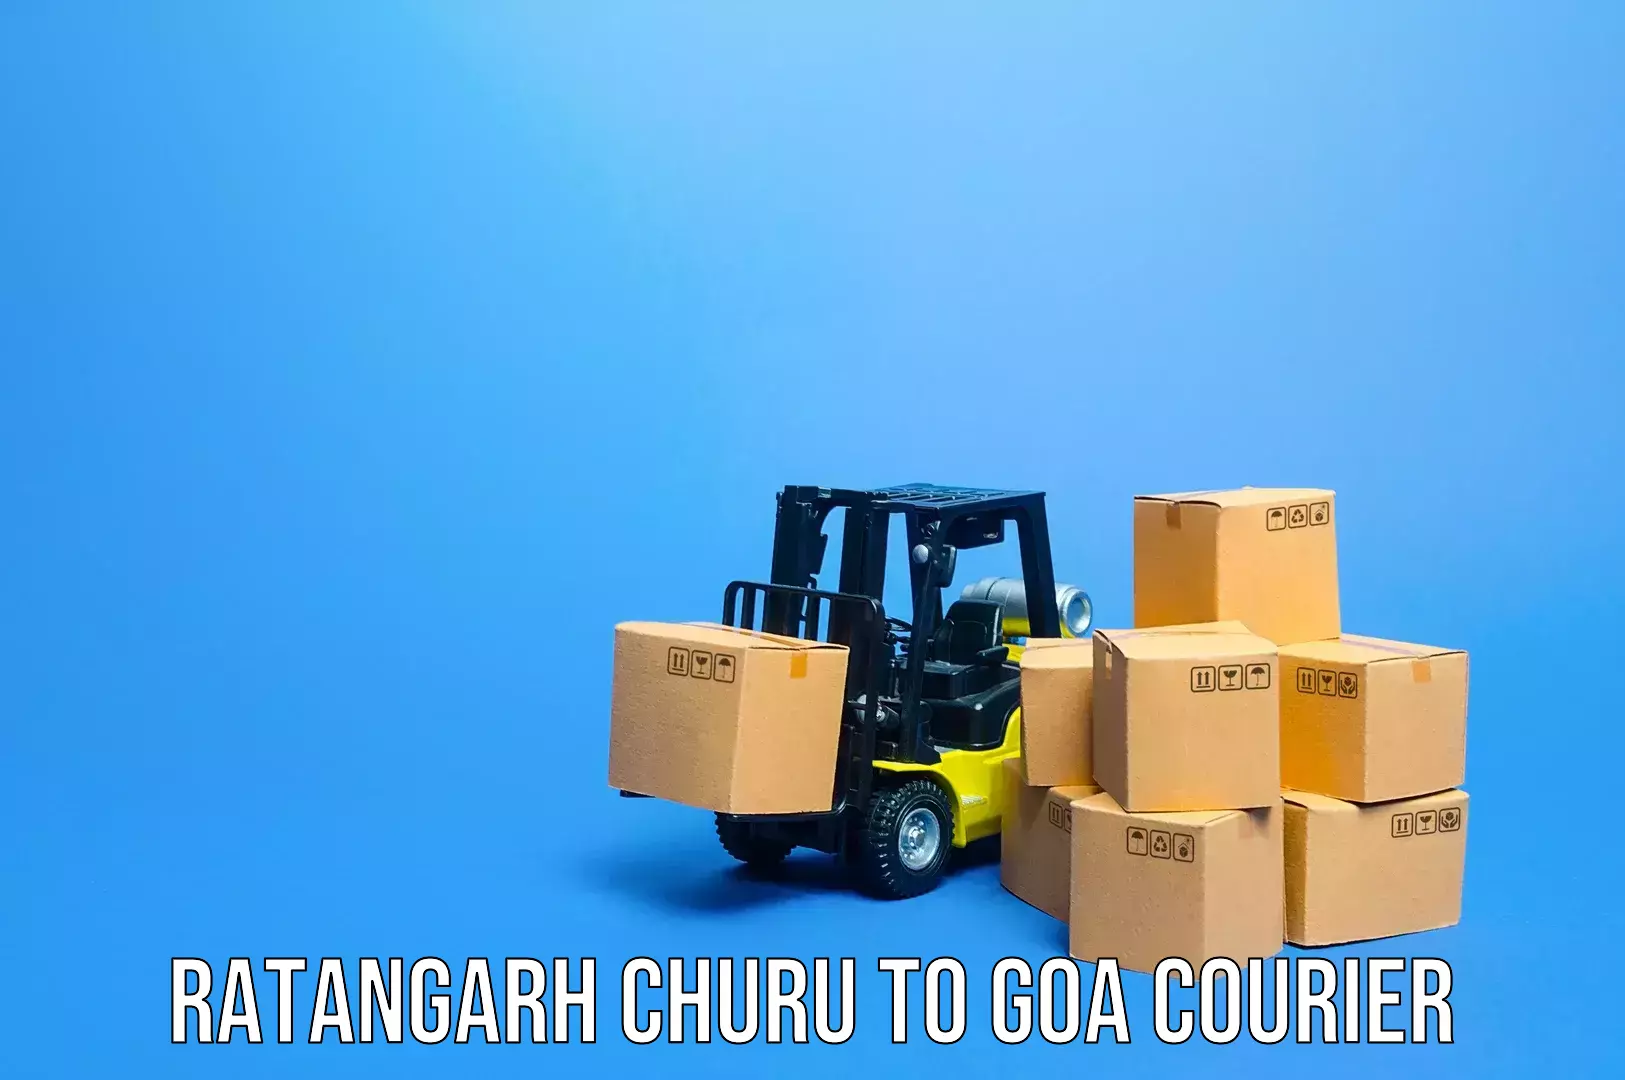 Baggage shipping quotes Ratangarh Churu to Bardez